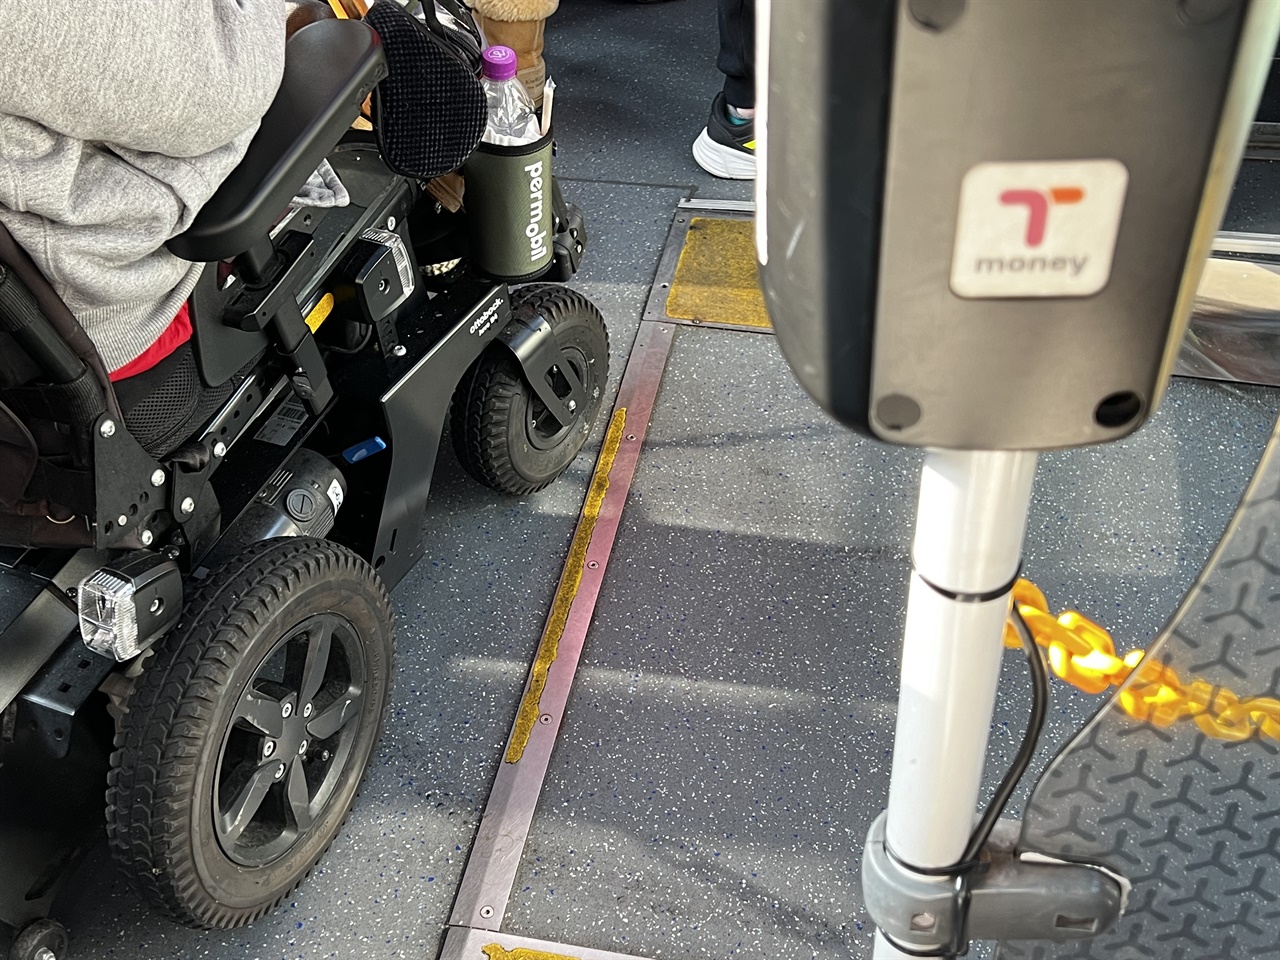 아이들은 저상버스가 익숙하지만 저상버스가 어떤 사람들을 위해 만들어졌는지는 잘 생각하지 못한다. 유아차나 휠체어가 이용하기 어려운 환경 탓이다. 2013년에 태어난 작은아이는 단 한 번도 시내버스에 탄 휠체어를 본 적이 없다고 한다. 
